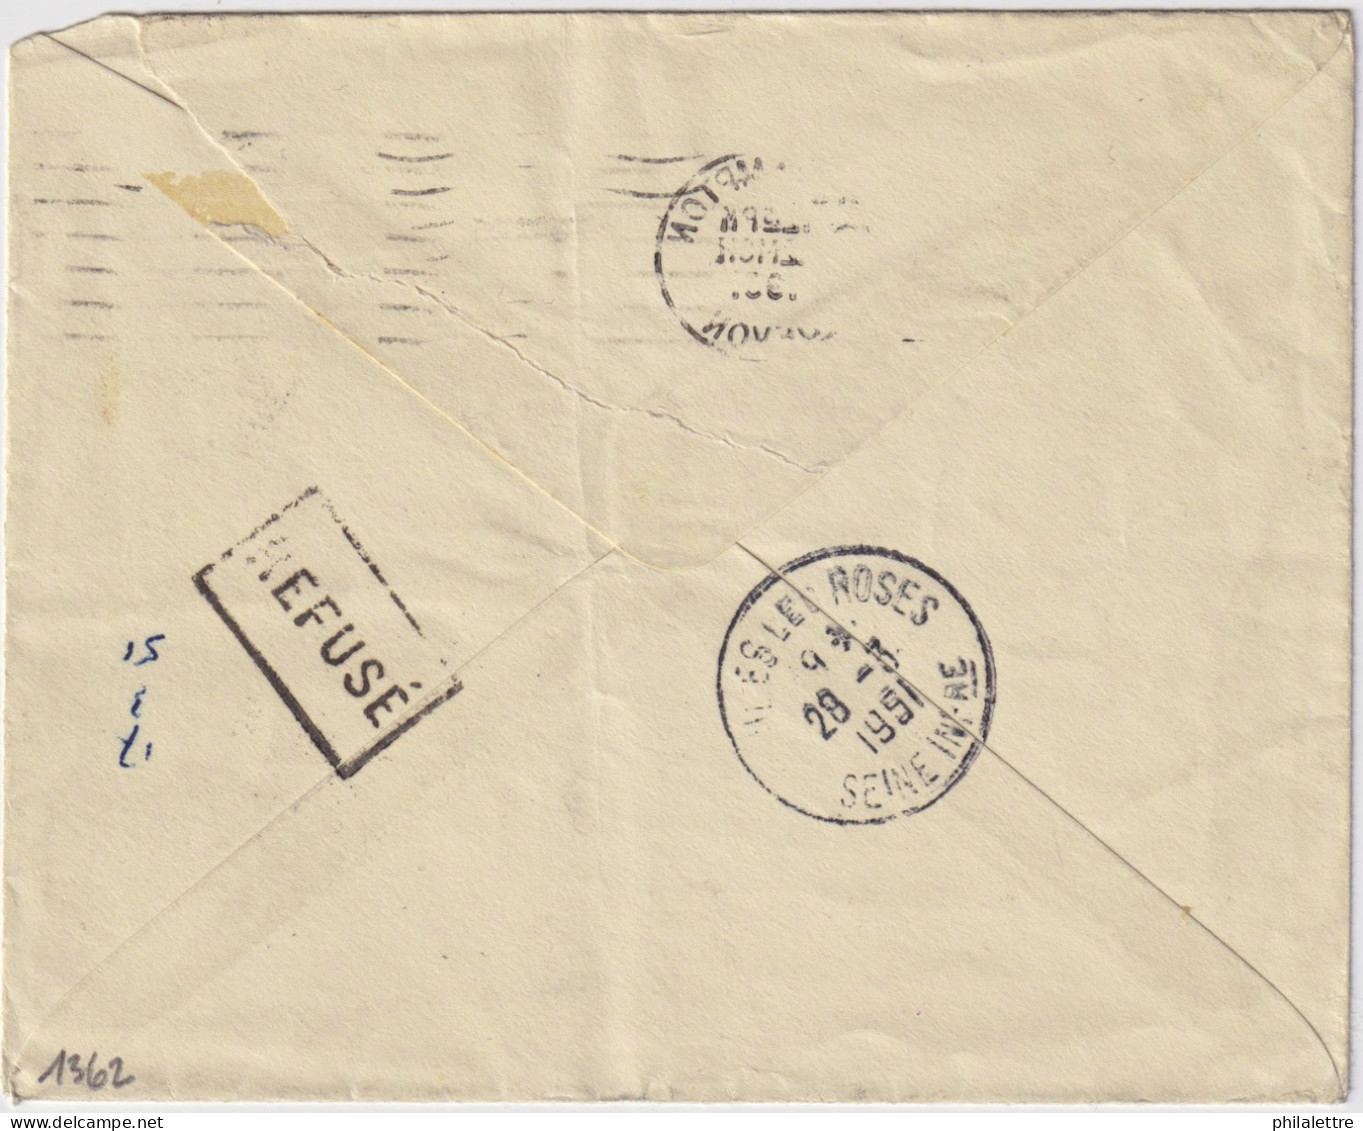 FRANCE 1951 LSC D'Angleterre Sous-affranchie (2-1/2d Pour 4d) Taxée 17f à Veules-les-Roses, Refusée, Taxée 4d Au Retour - 1859-1959 Lettres & Documents